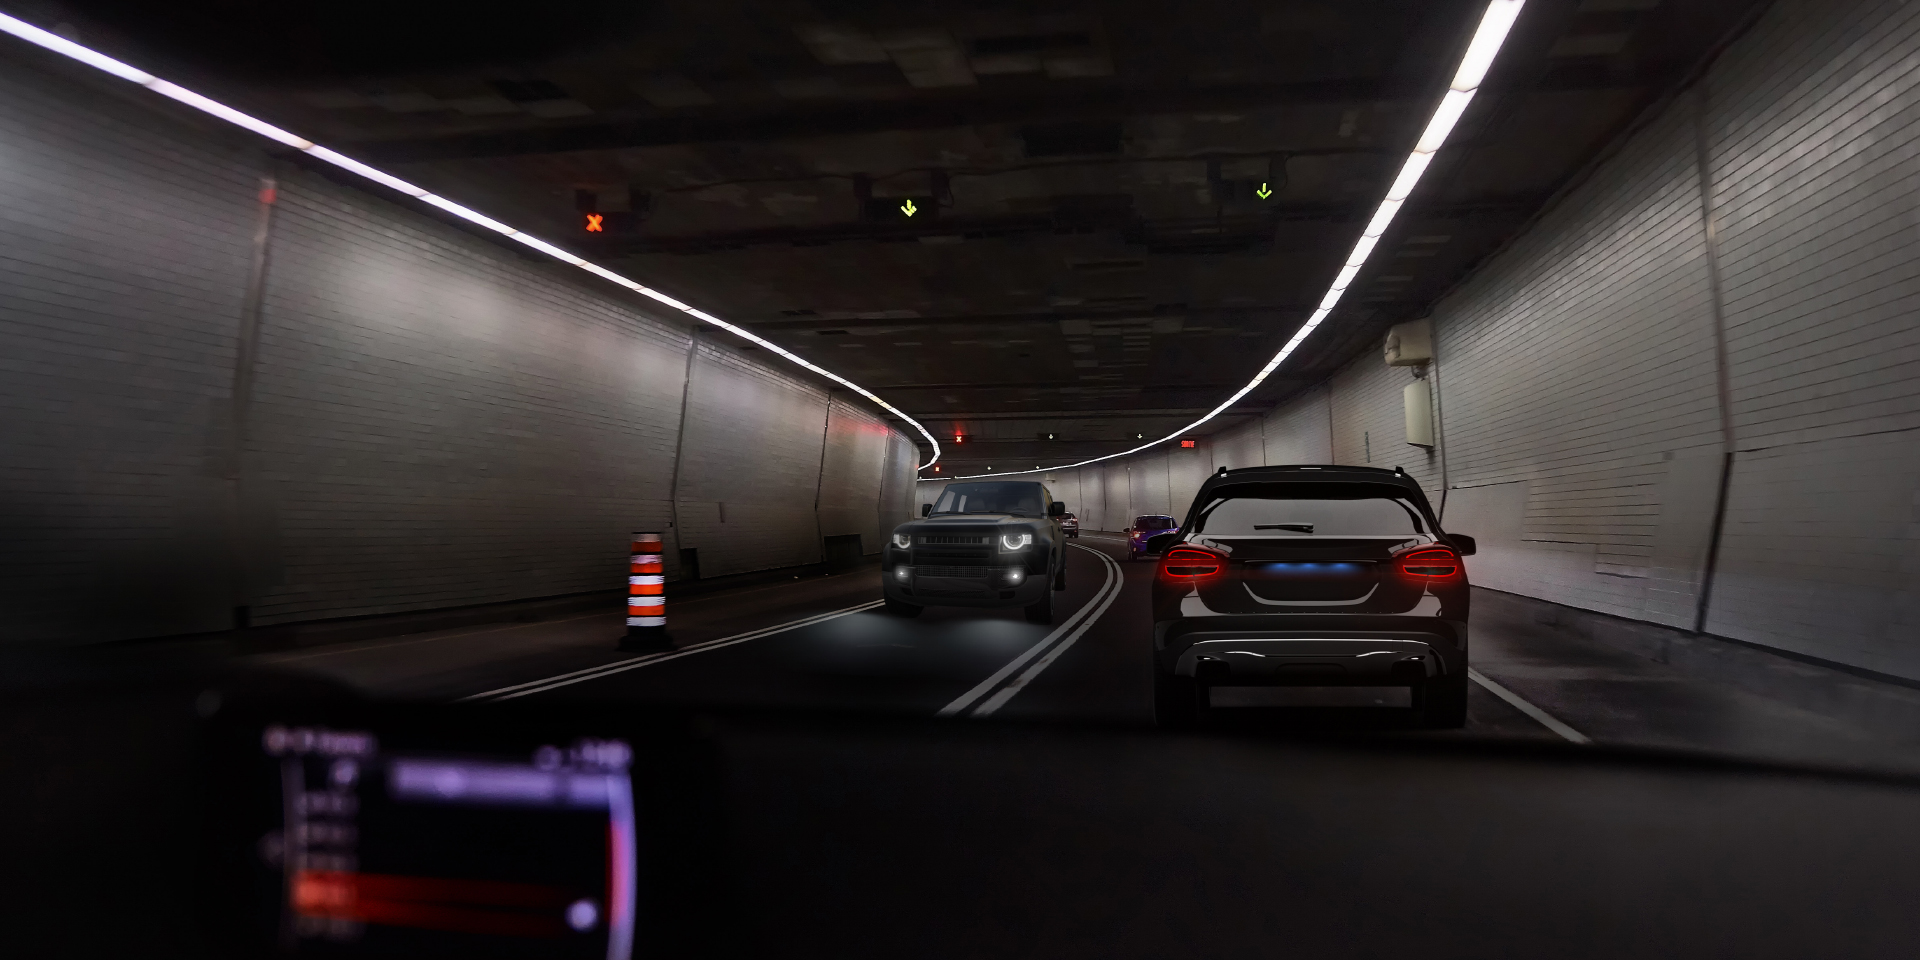 Två bilder ur en bilförares perspektiv, i en tunnel med mötande trafik. En bild visar bländning från bilen och belysningen i tunneln, medan den andra bilen visar märkbart mindre bländning.